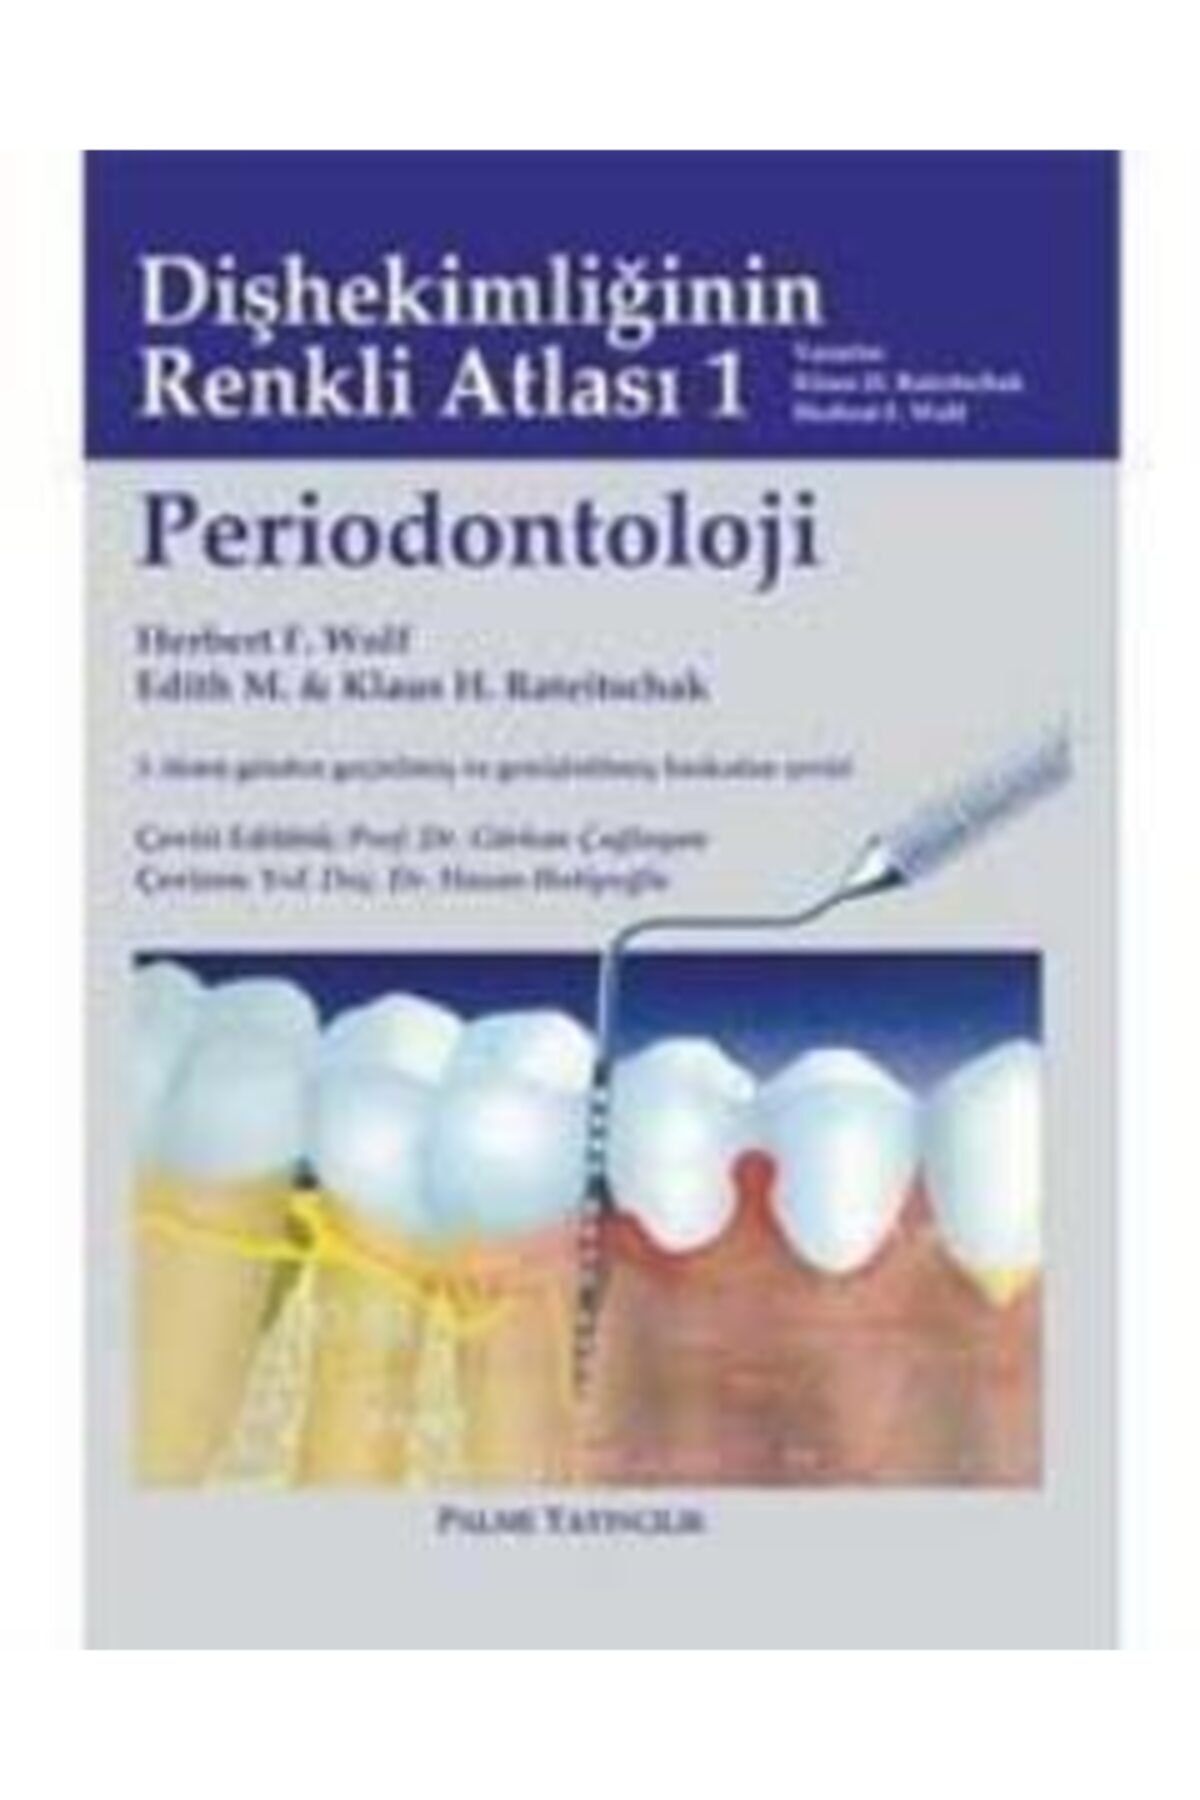 Palme Yayınevi Periodontoloji Kitabı